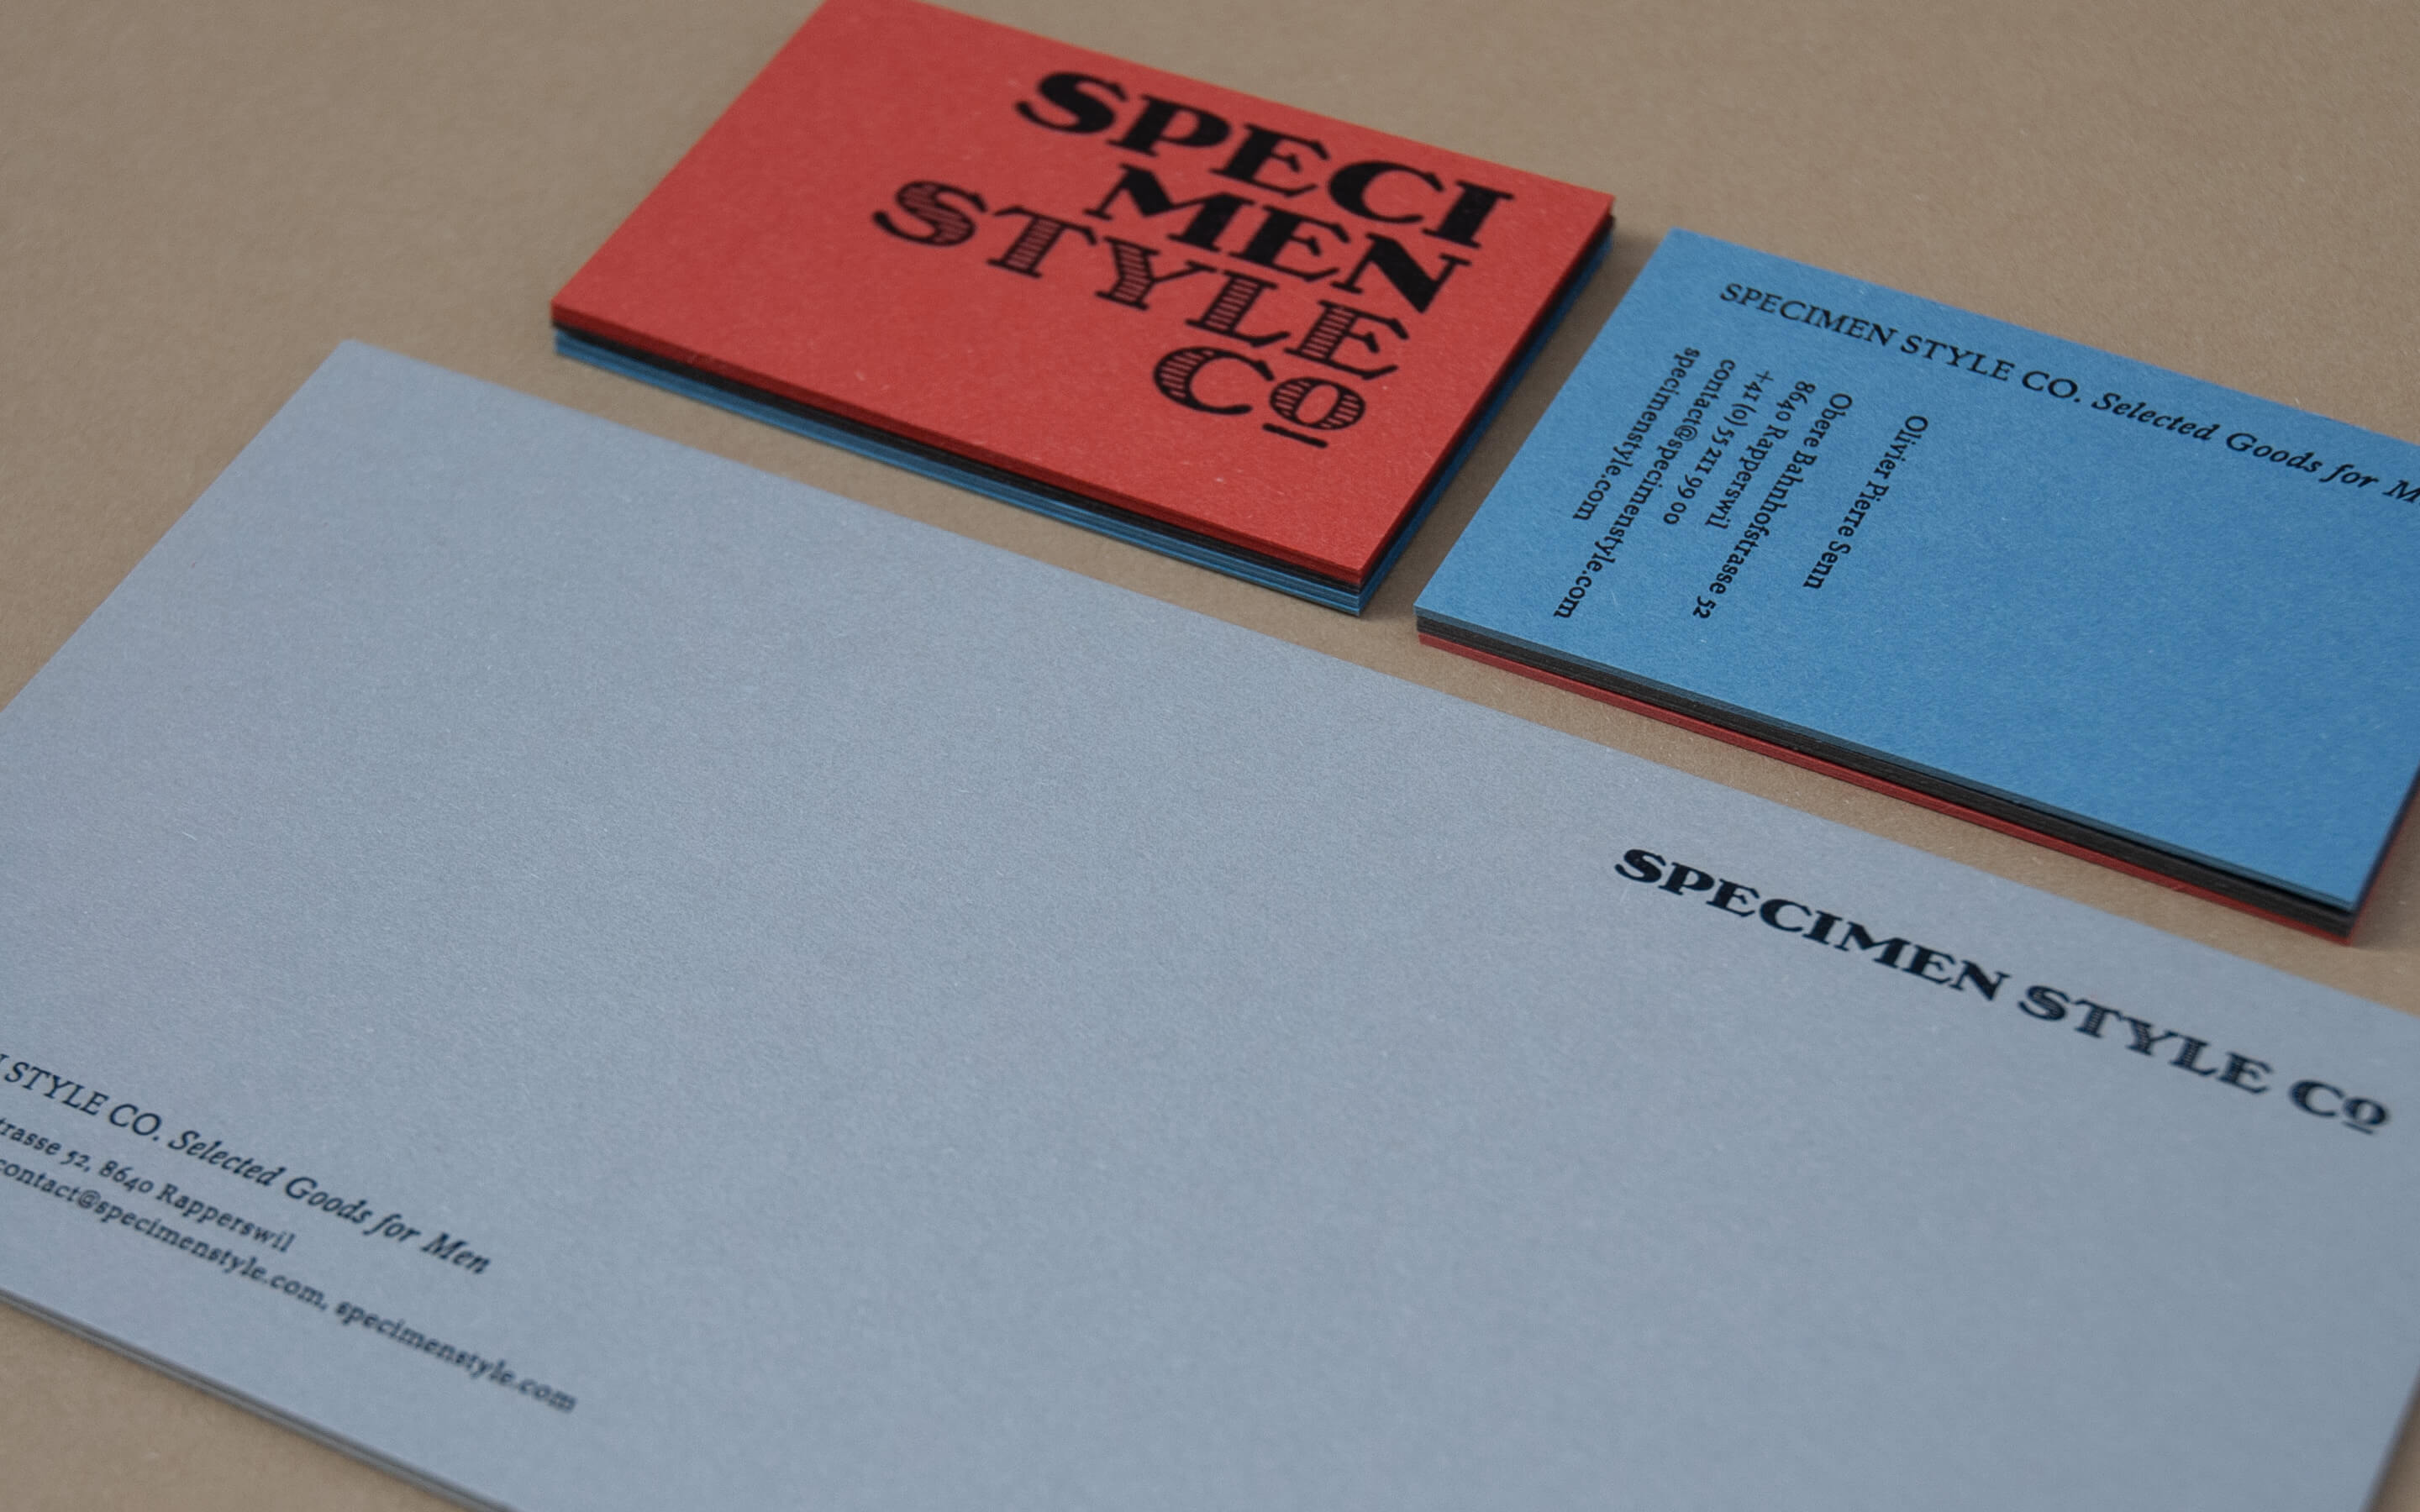 Specimen-Style-Co-Herrenbekleidung-Bleisatz-Buchdruck-Handsatz-Materica-Rapperswil-Parizzi-Buchdruck-Gebrauchsgrafik-1